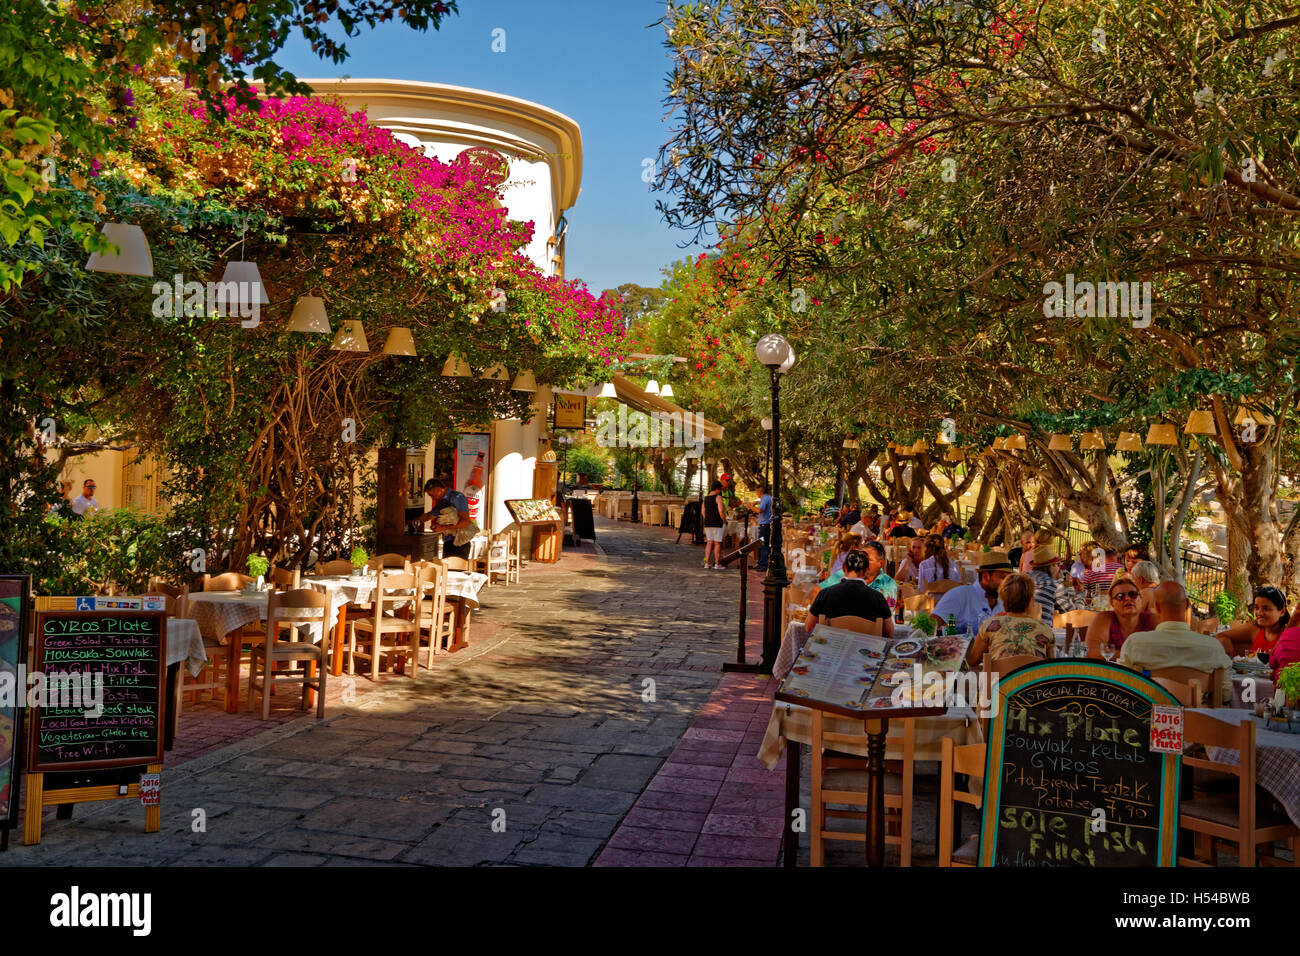 Chaussée ouvert restaurant adjacent à l'Agora de la ville de Kos, l'île de Kos, Grèce. Banque D'Images